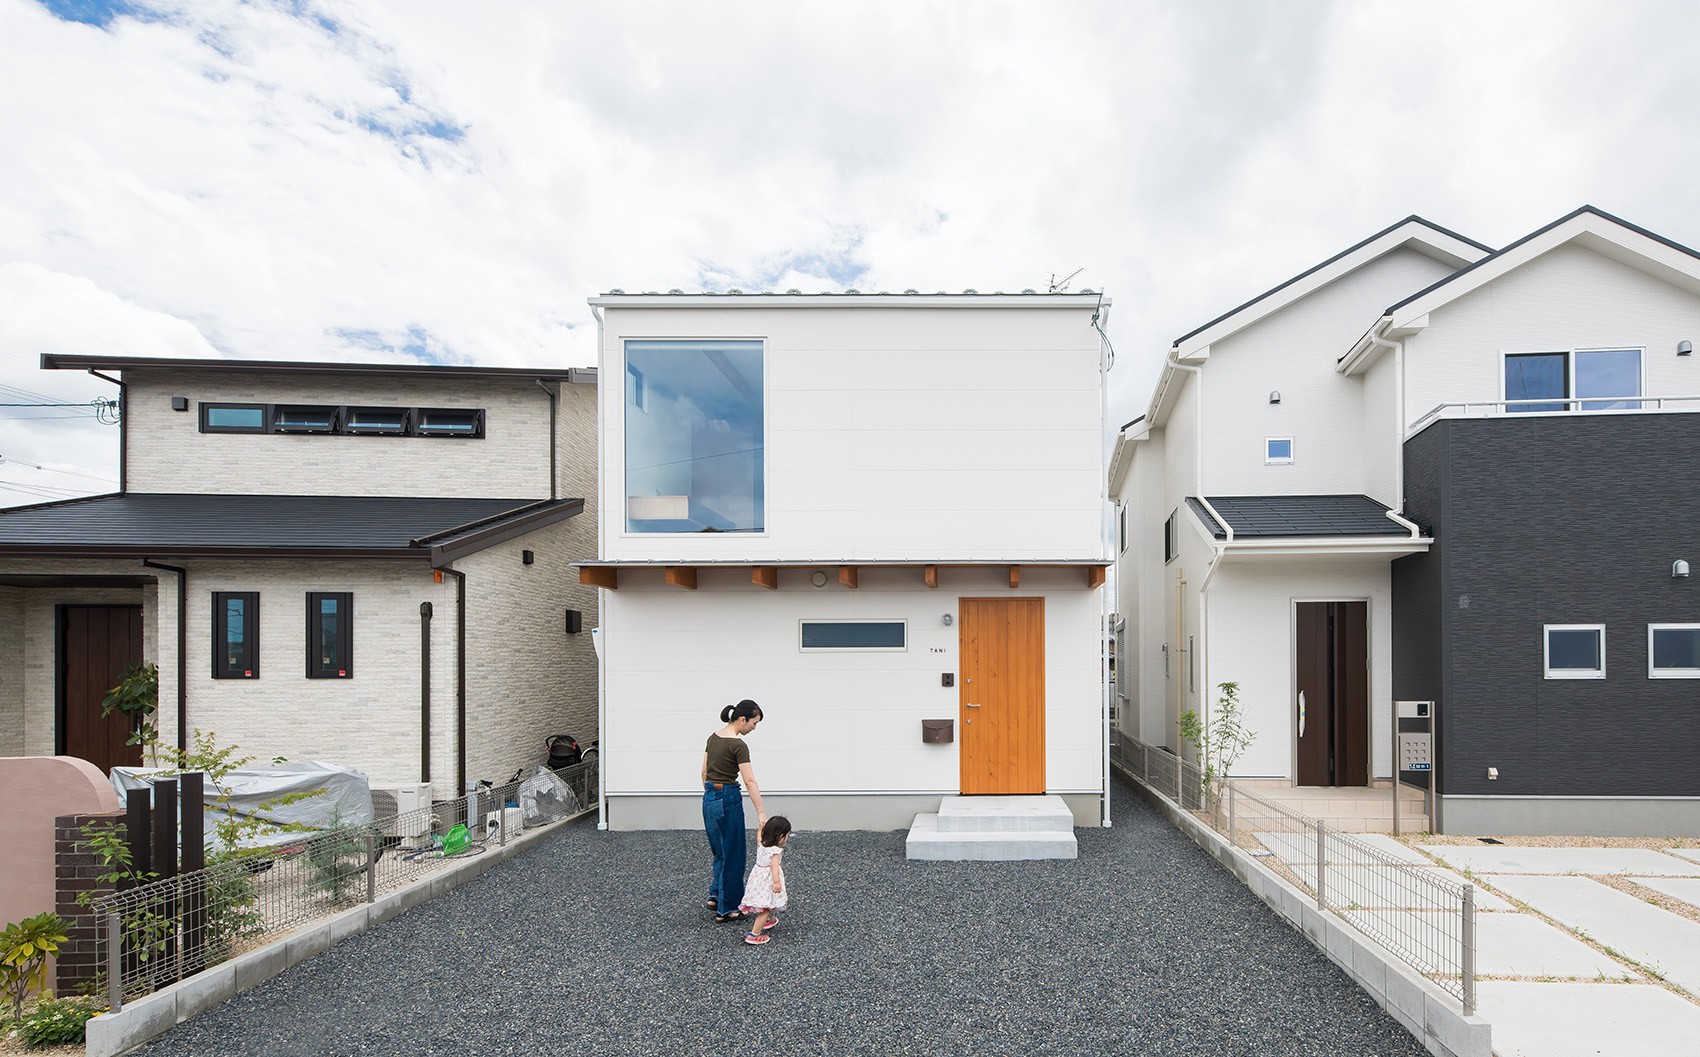 Gia đình có 3 con nhỏ vẫn sống thoải mái trong ngôi nhà phố chật hẹp ở Nhật nhờ thiết kế thông minh - Ảnh 1.